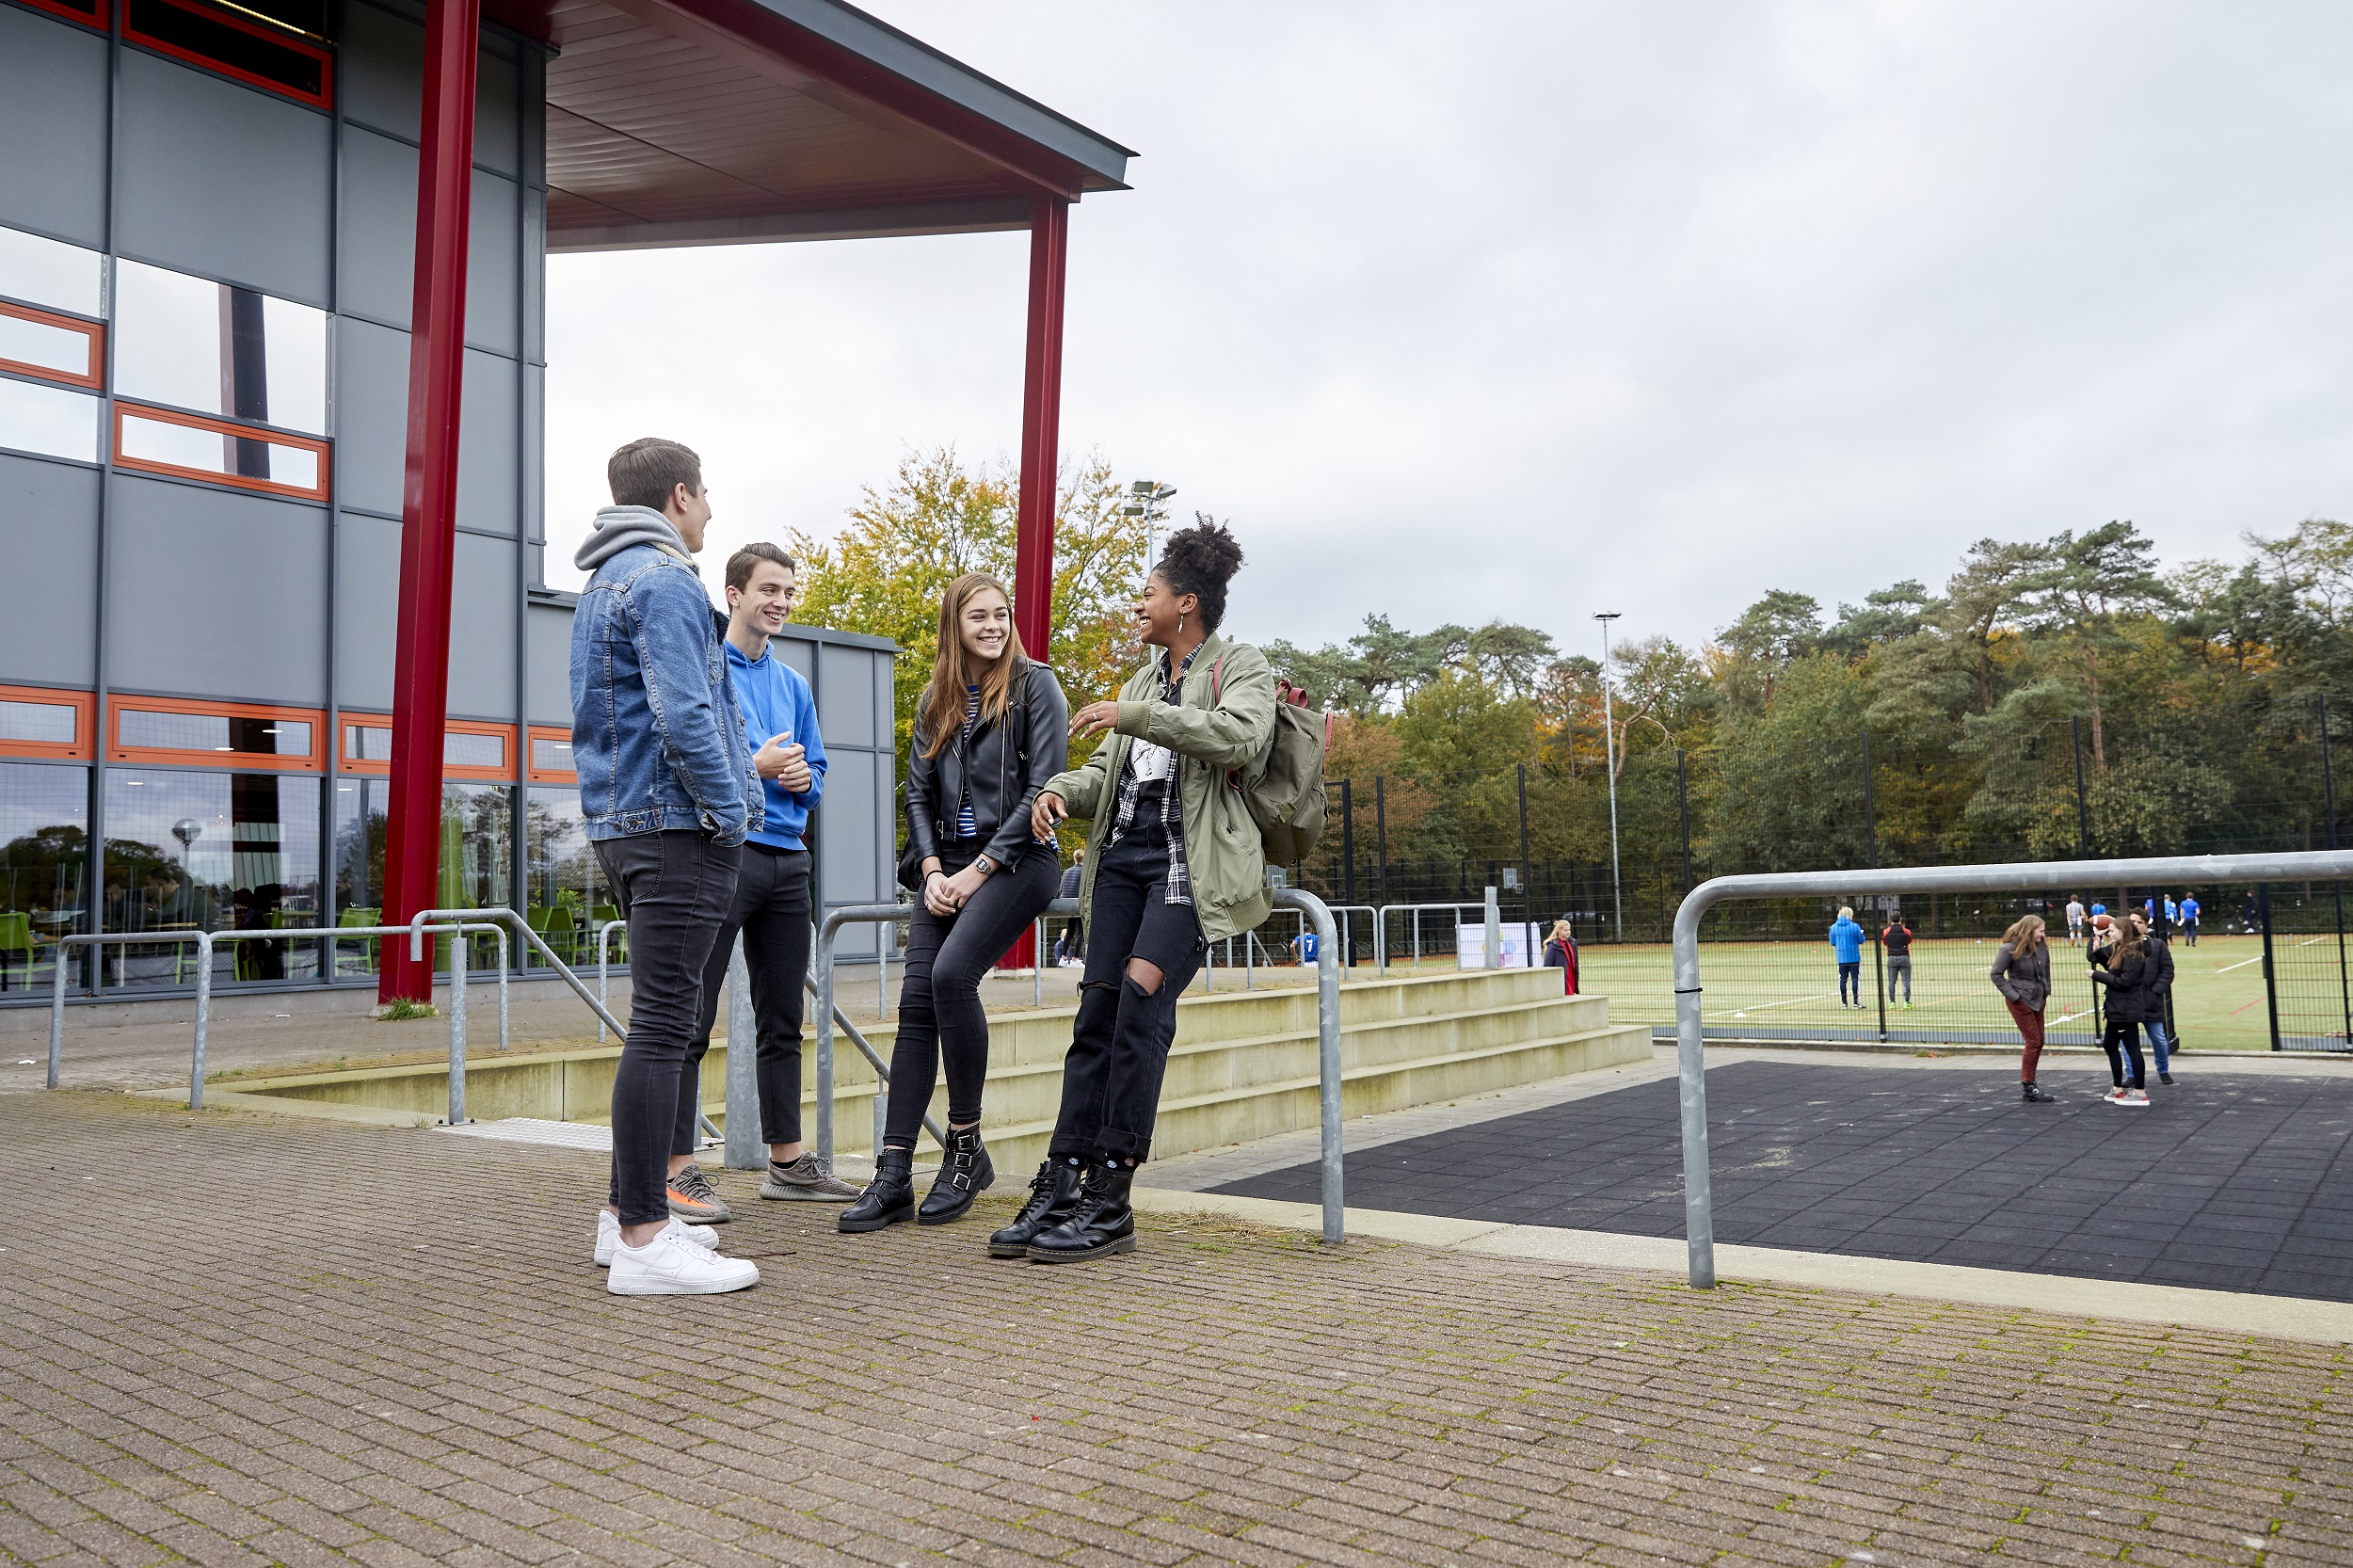 Twee jongens en twee meisjes staan op een schoolplein met elkaar te praten